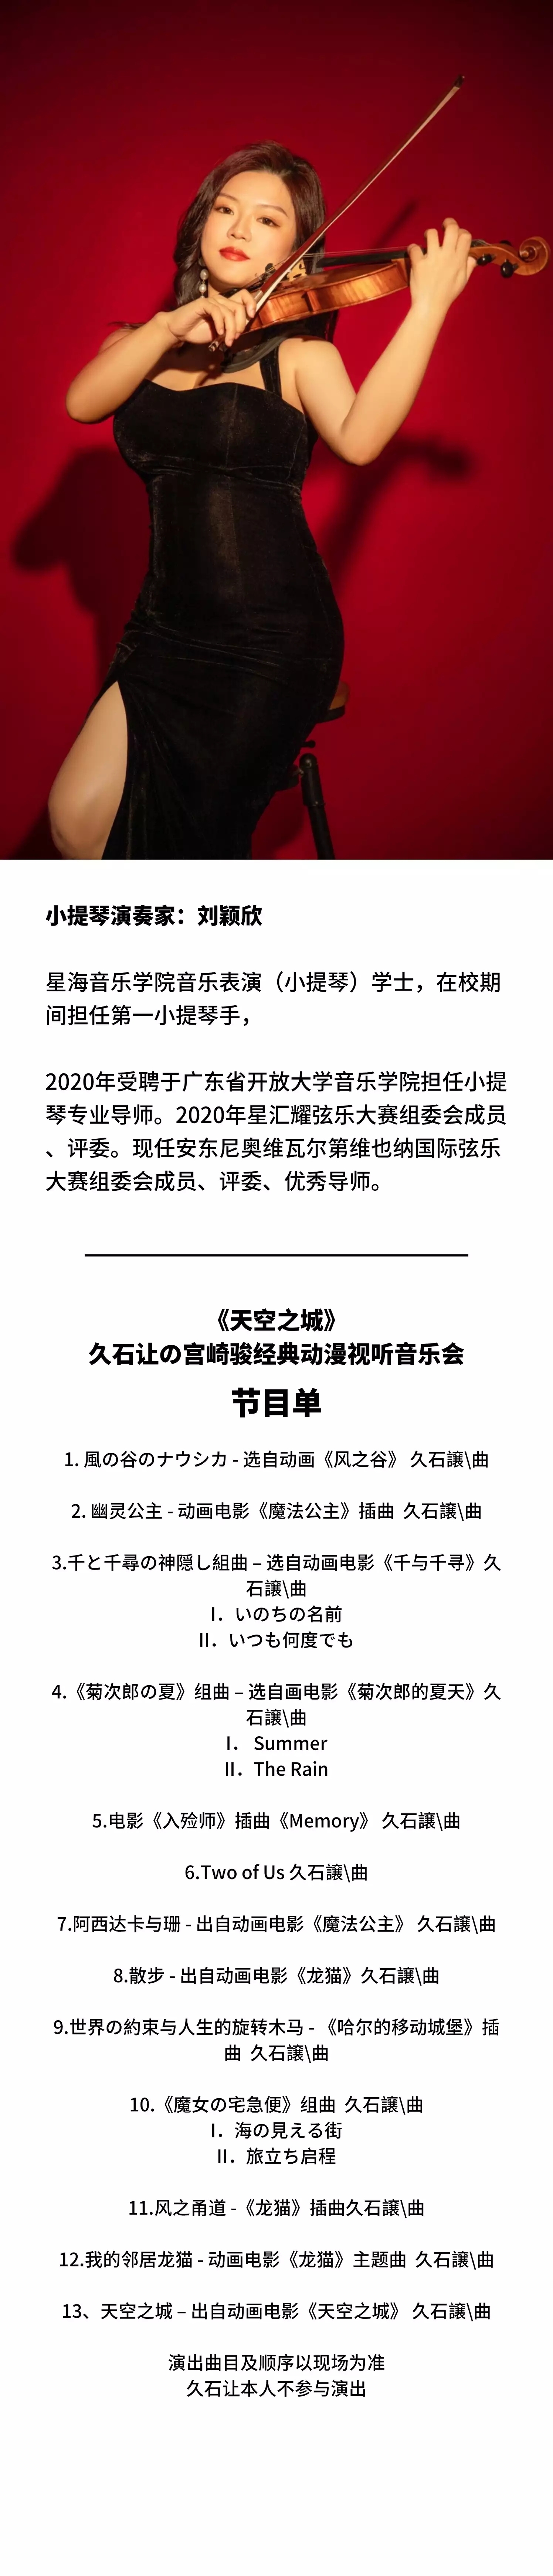 2022《天空之城》6.0久石让&宫崎骏经典动漫音乐作品视听音乐会-广州站